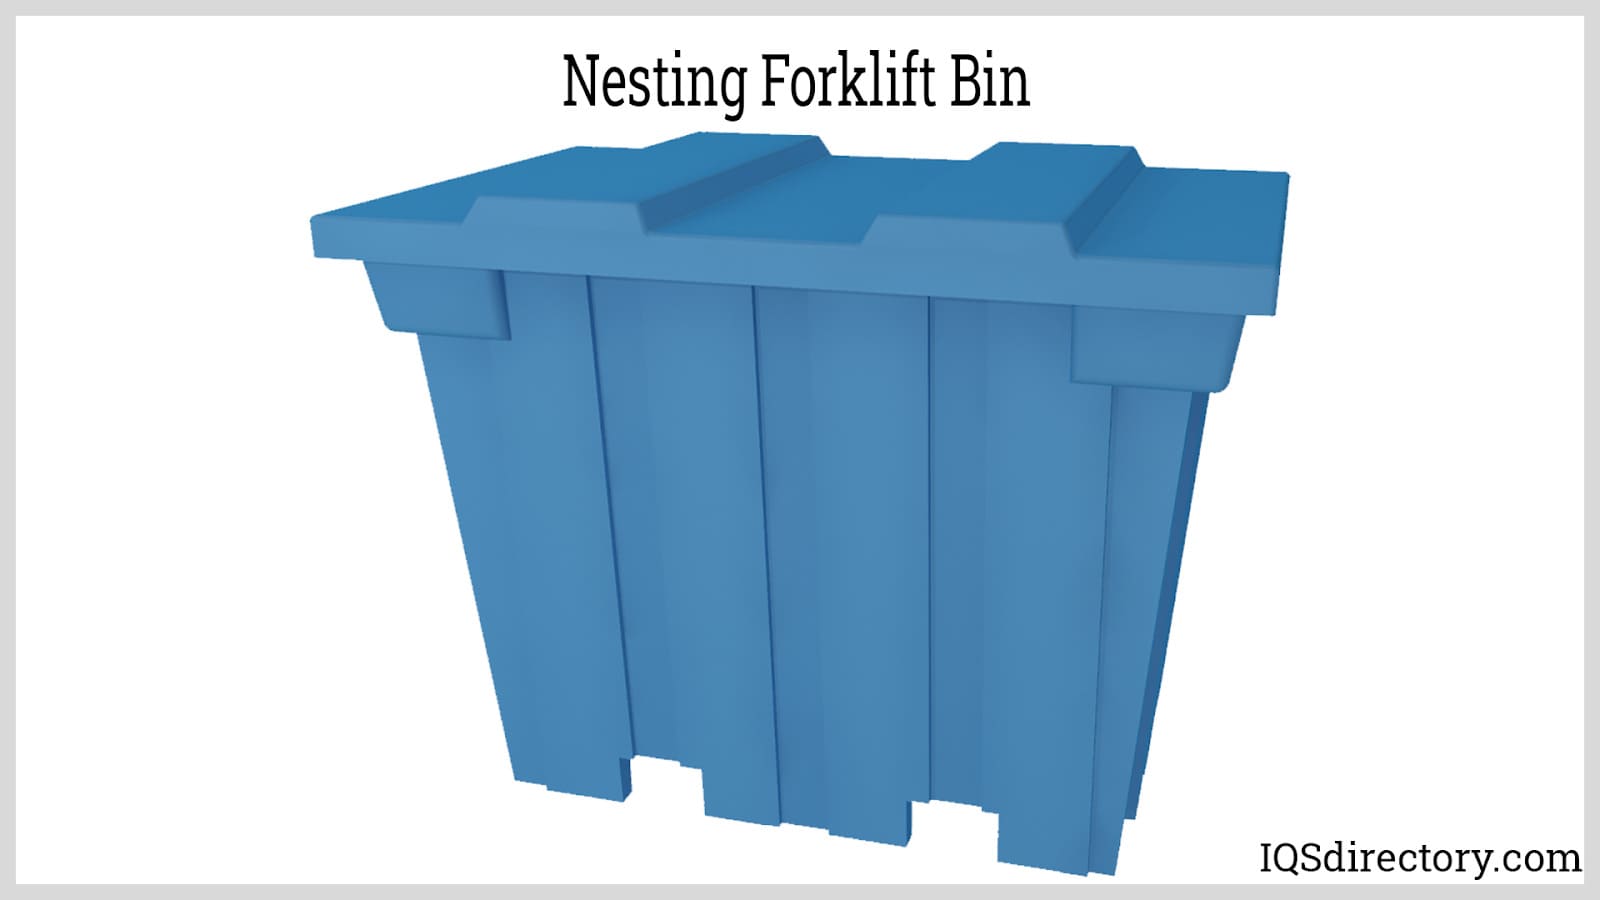 Nesting Forklift Bin